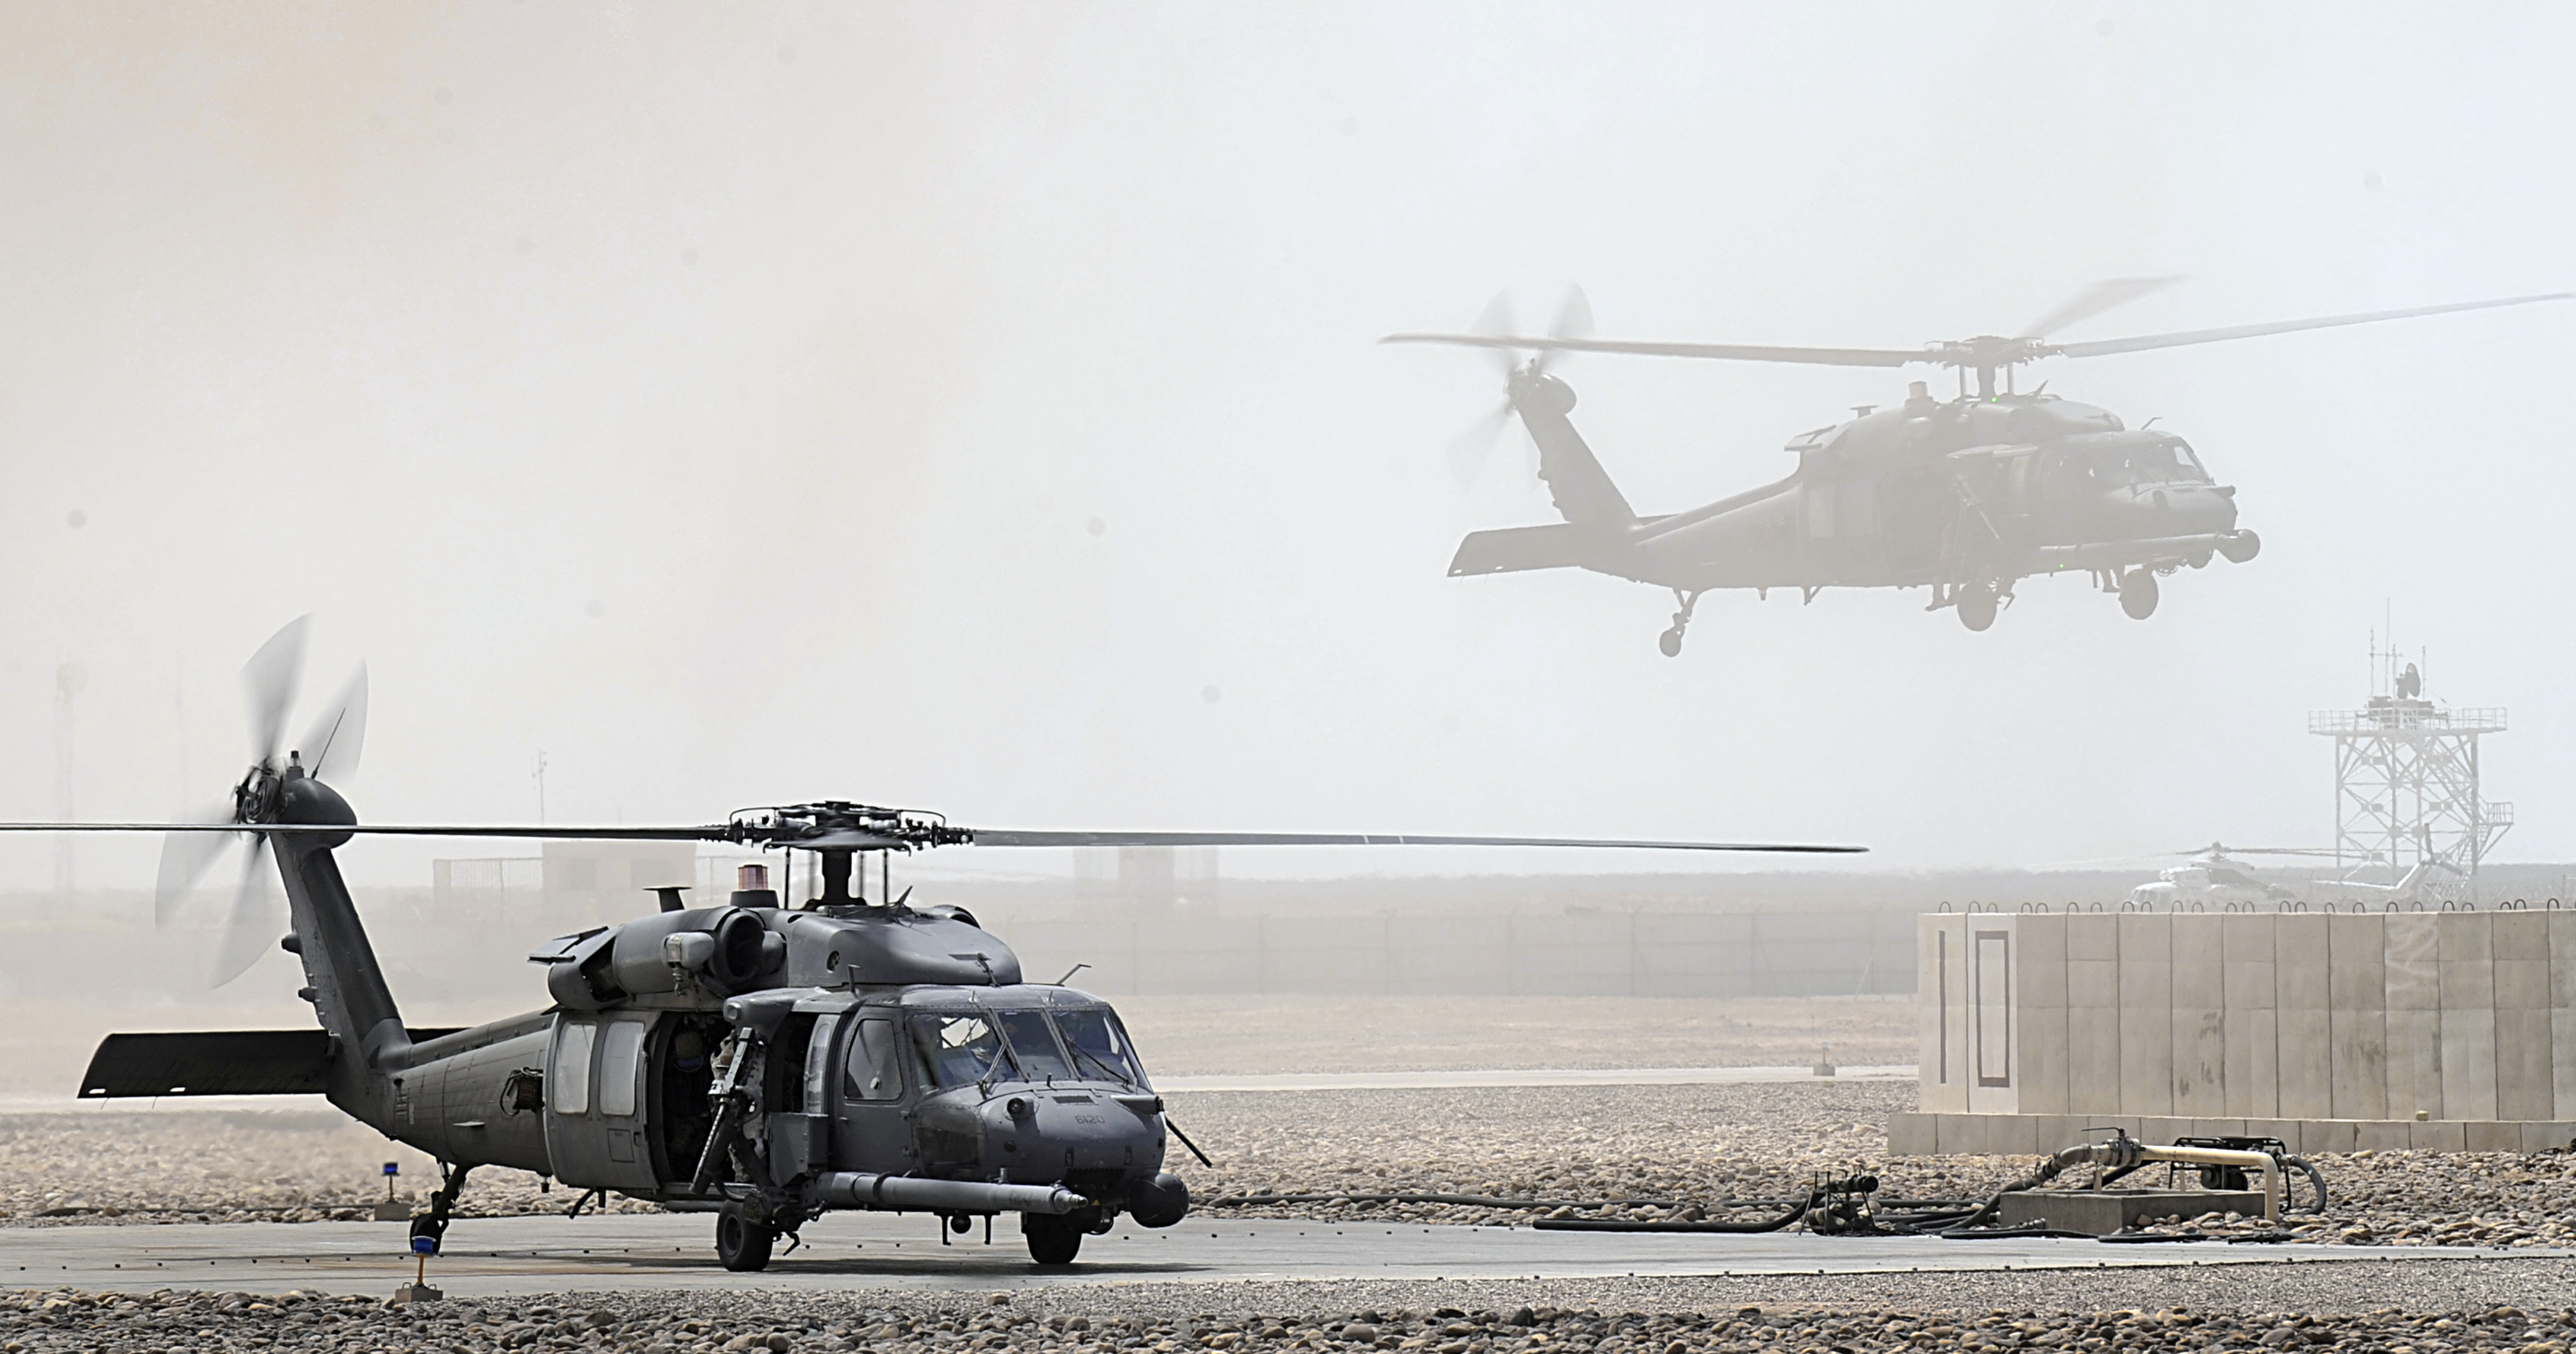 самолет, вертолеты, транспортные средства, UH - 60 Black Hawk - обои на рабочий стол